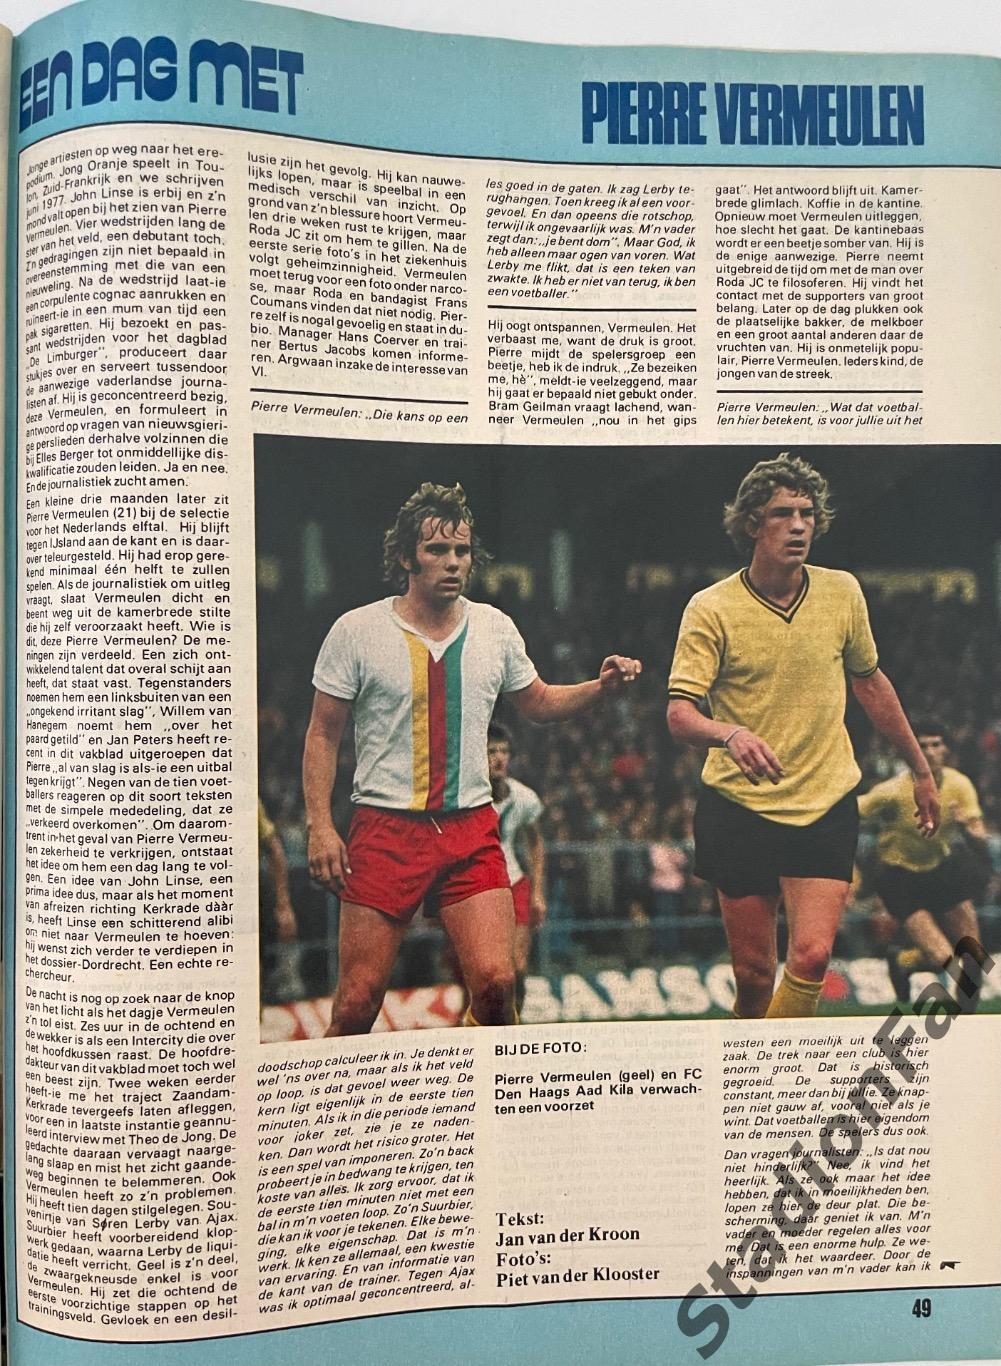 Журнал Voetbal nr.40 - 1977 год. 3